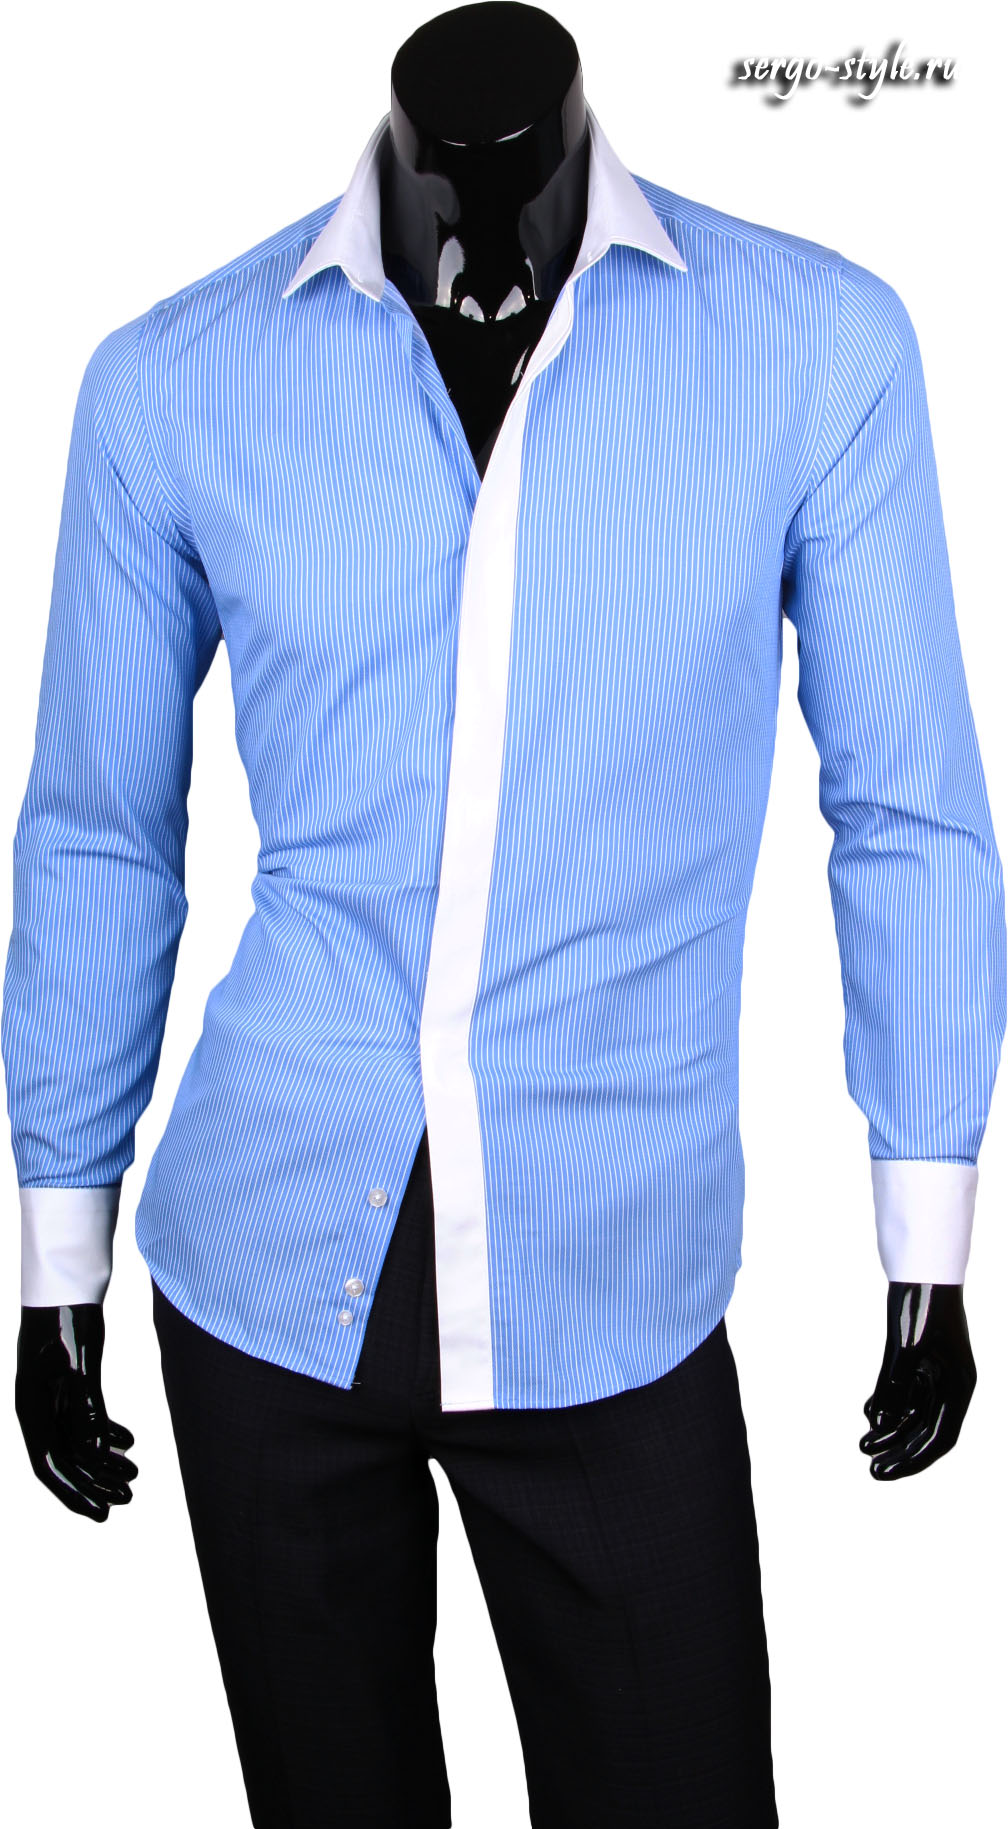 Голубая рубашка с белым воротником и манжетами